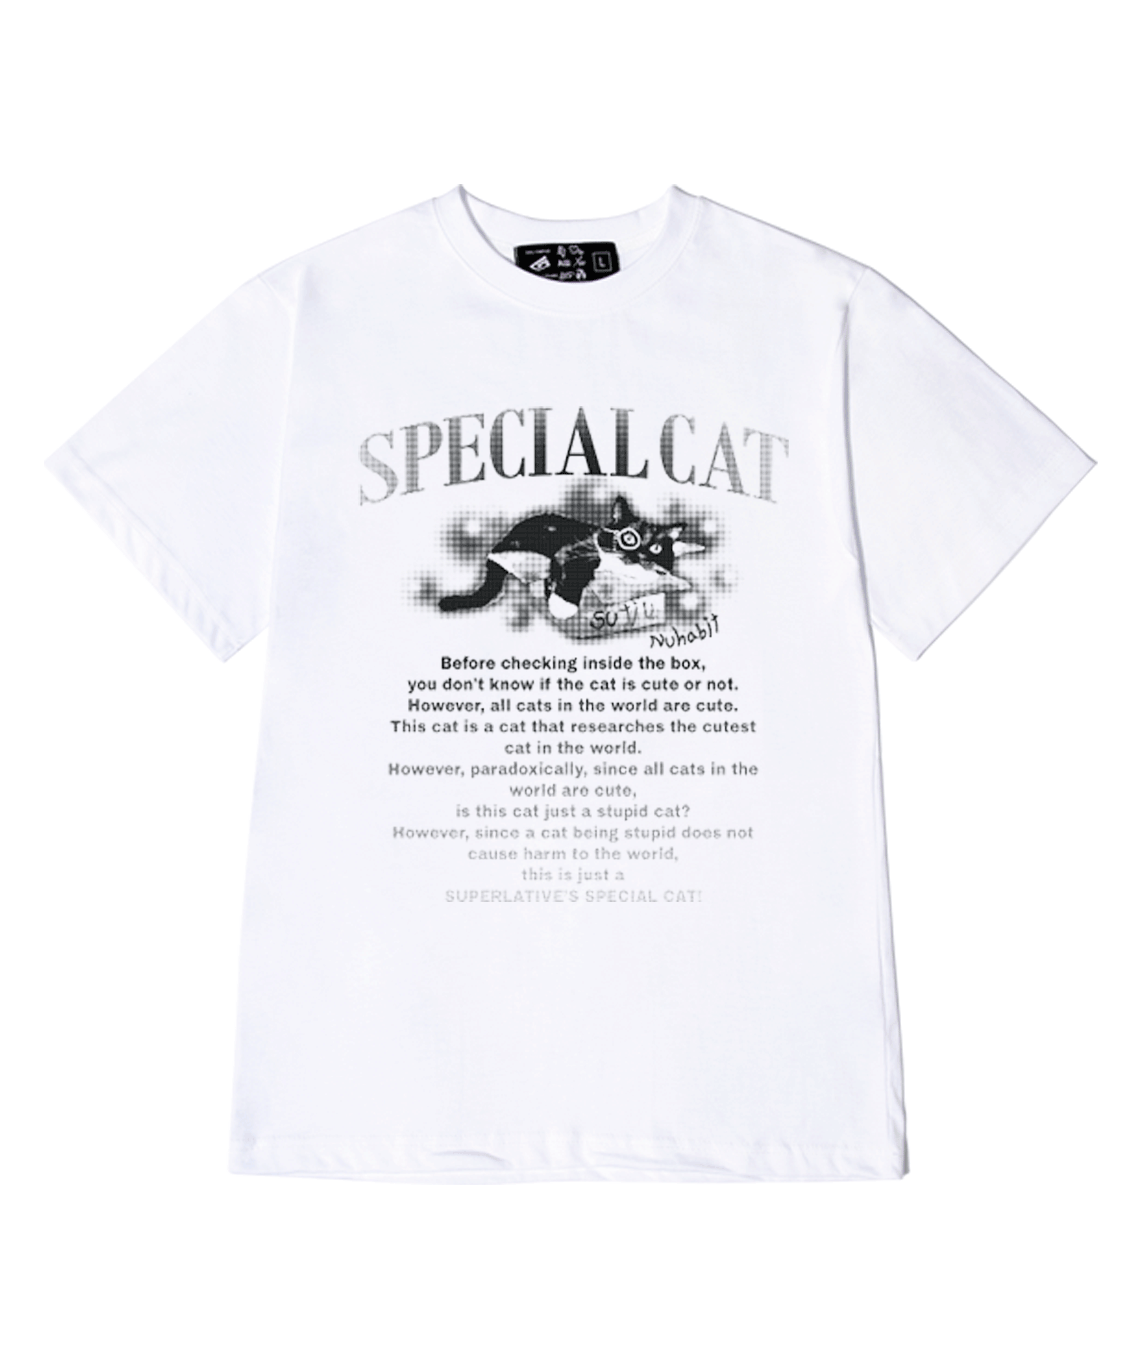 SPECIAL CAT 반팔 (SBS2-4SP082)